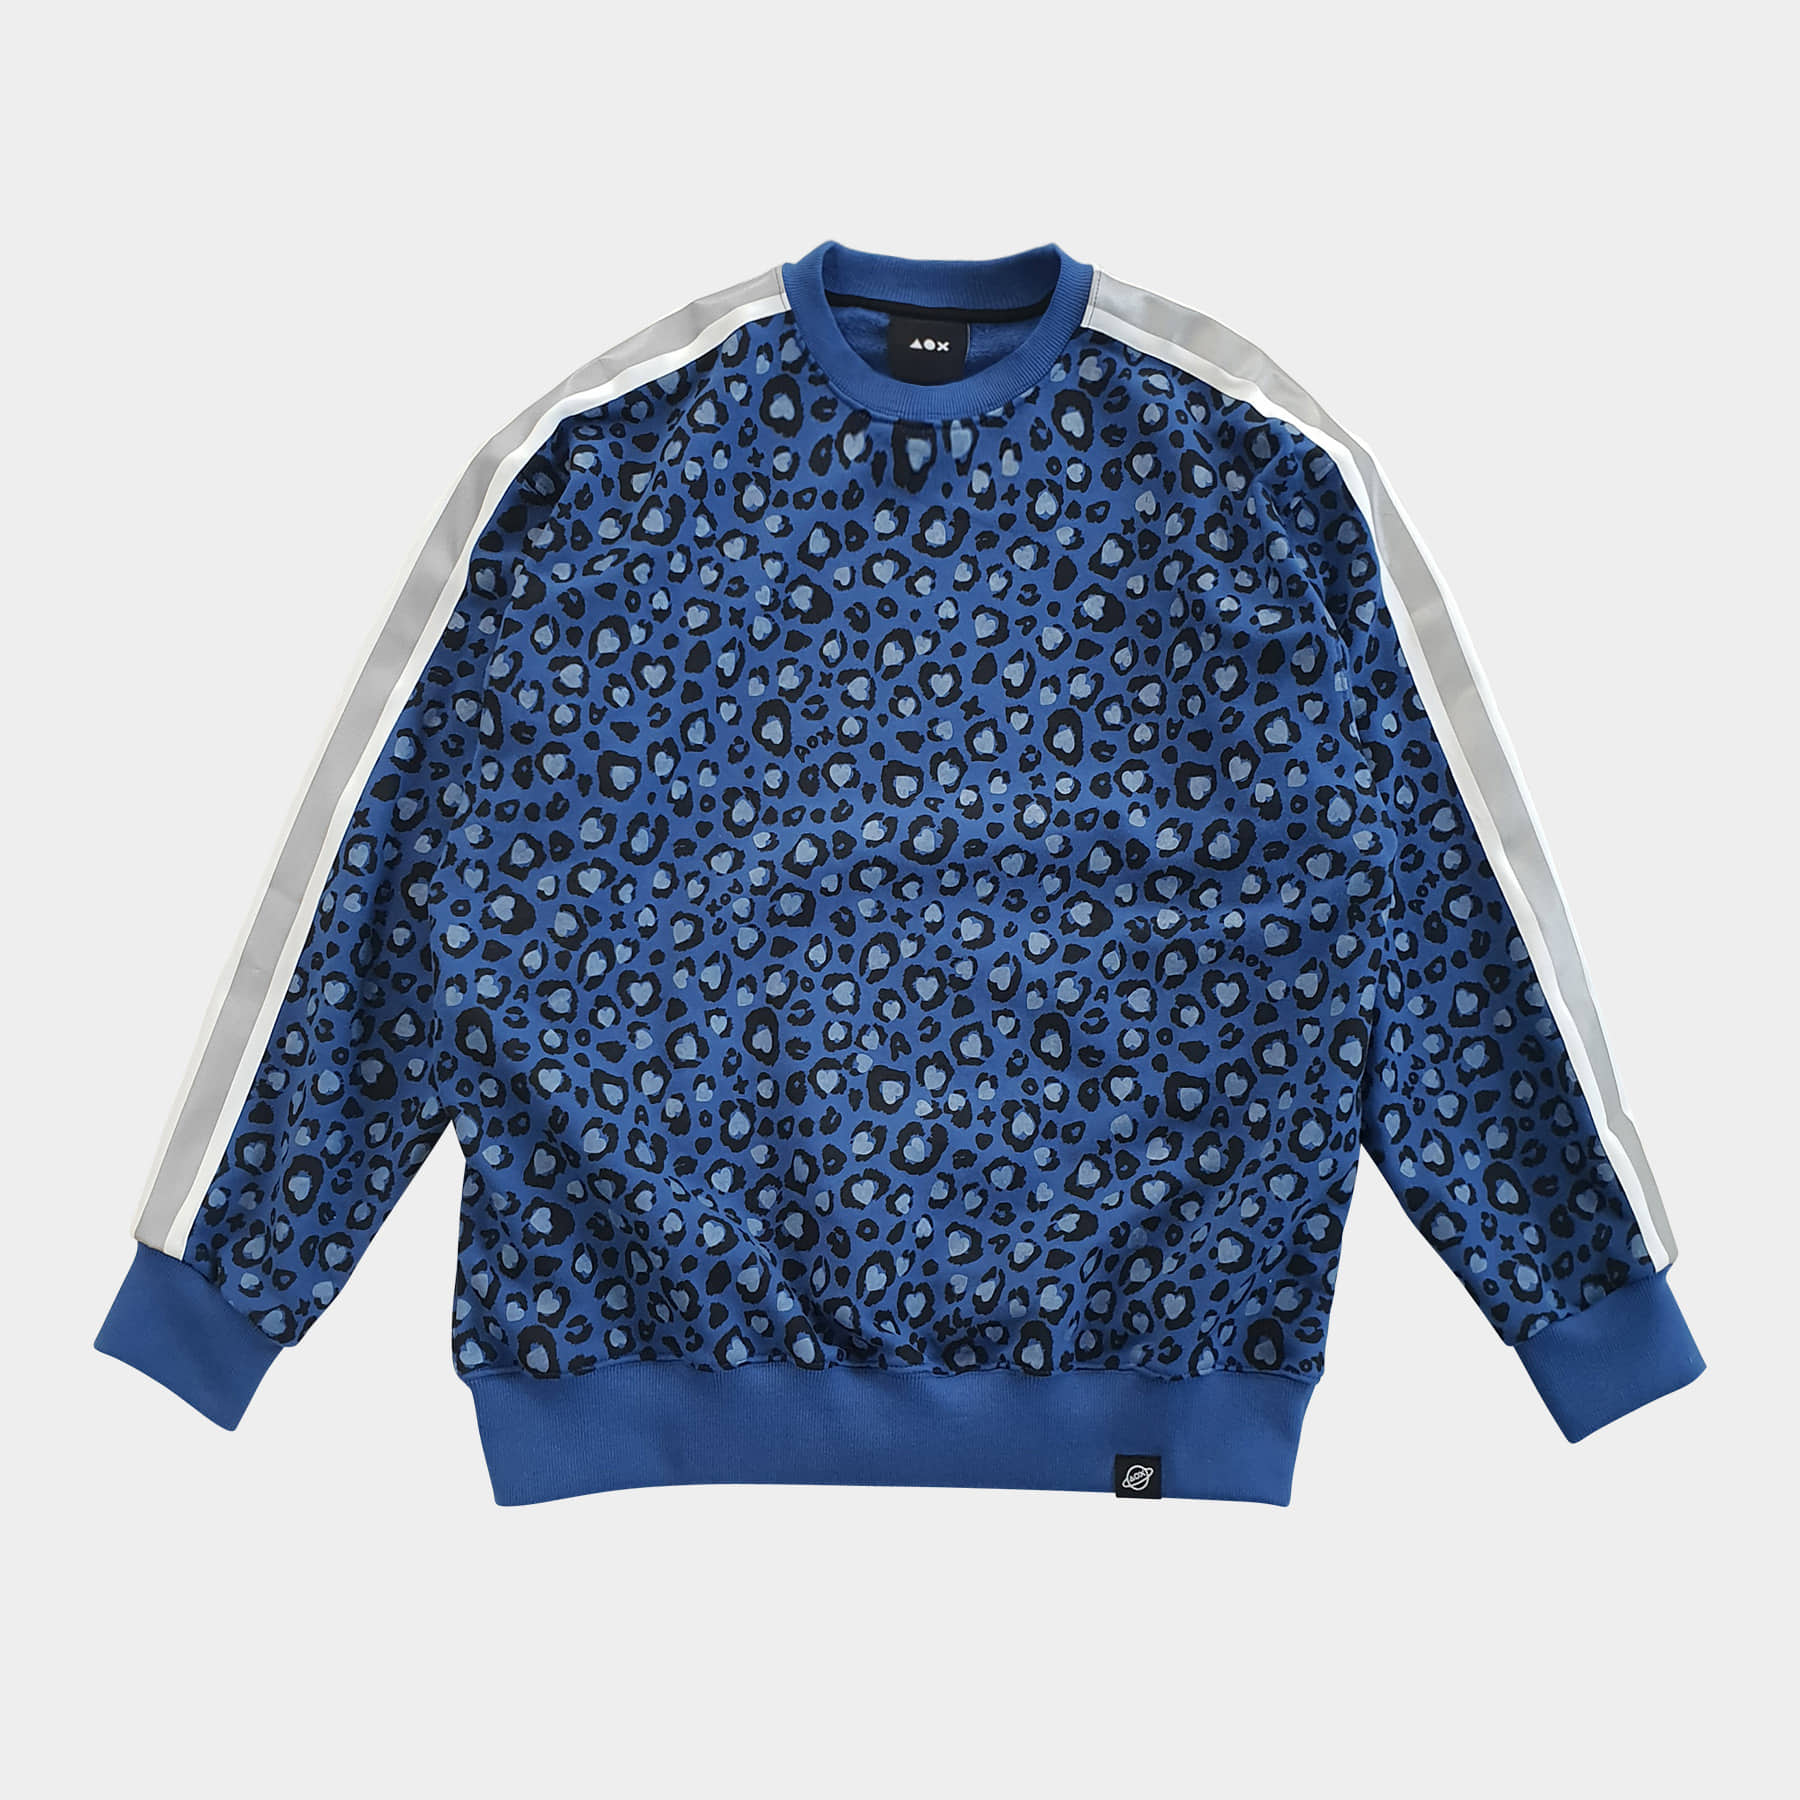 Leopard Sweatshirt (Blue) *reflective tape